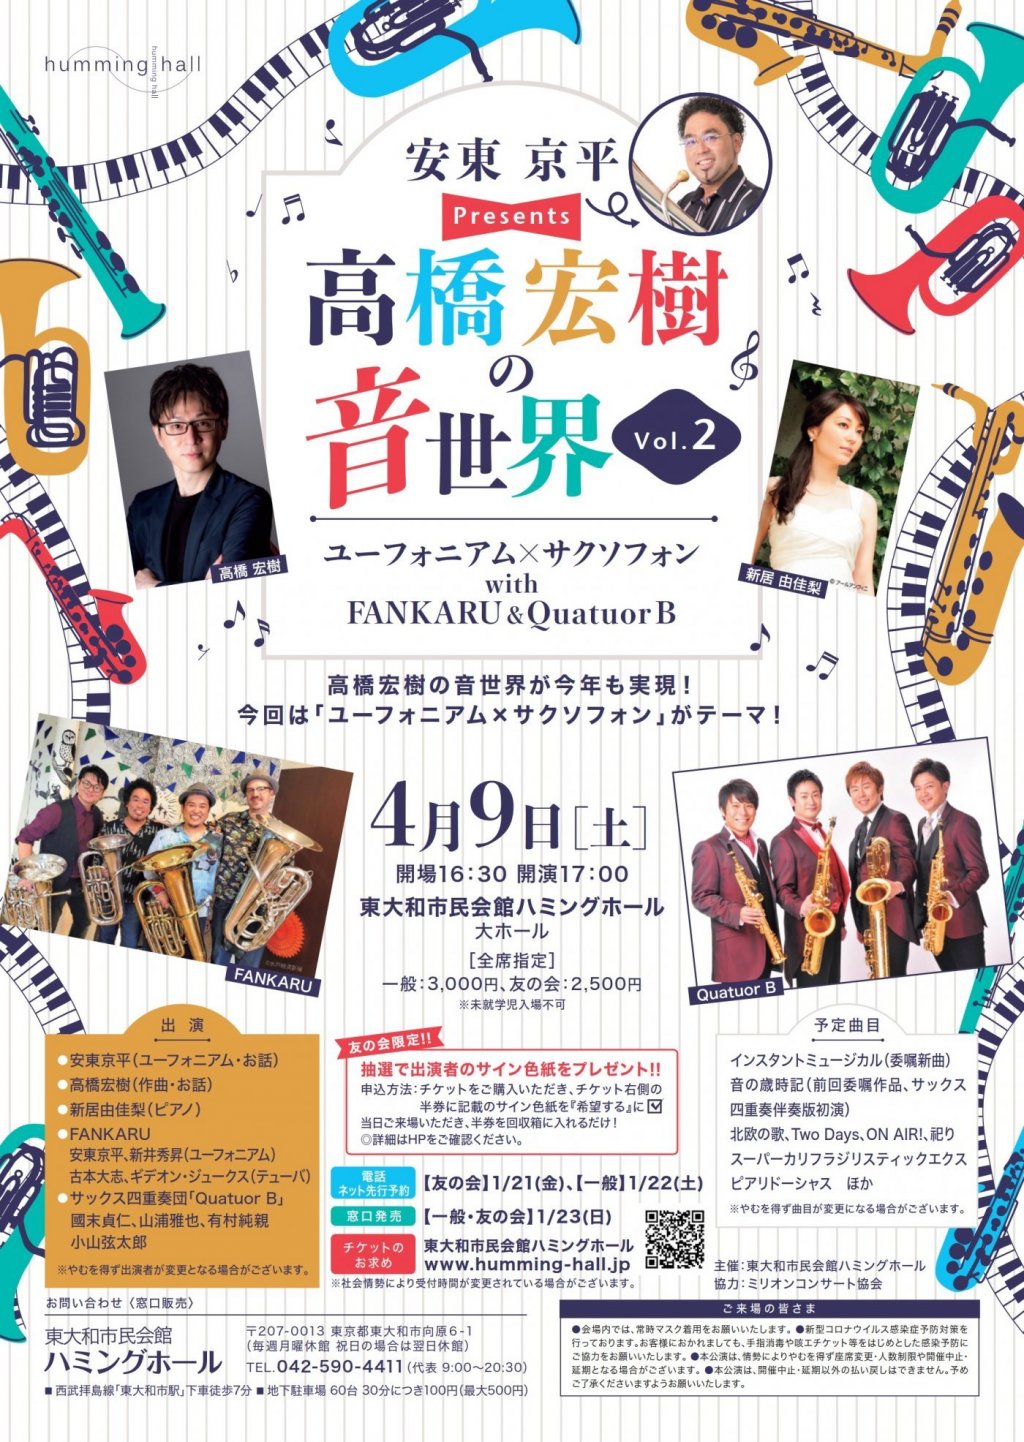 安東京平presents 高橋宏樹の音世界 Vol.2「ユーフォニアム & サクソフォンwith FANKARU & Quatuor B」